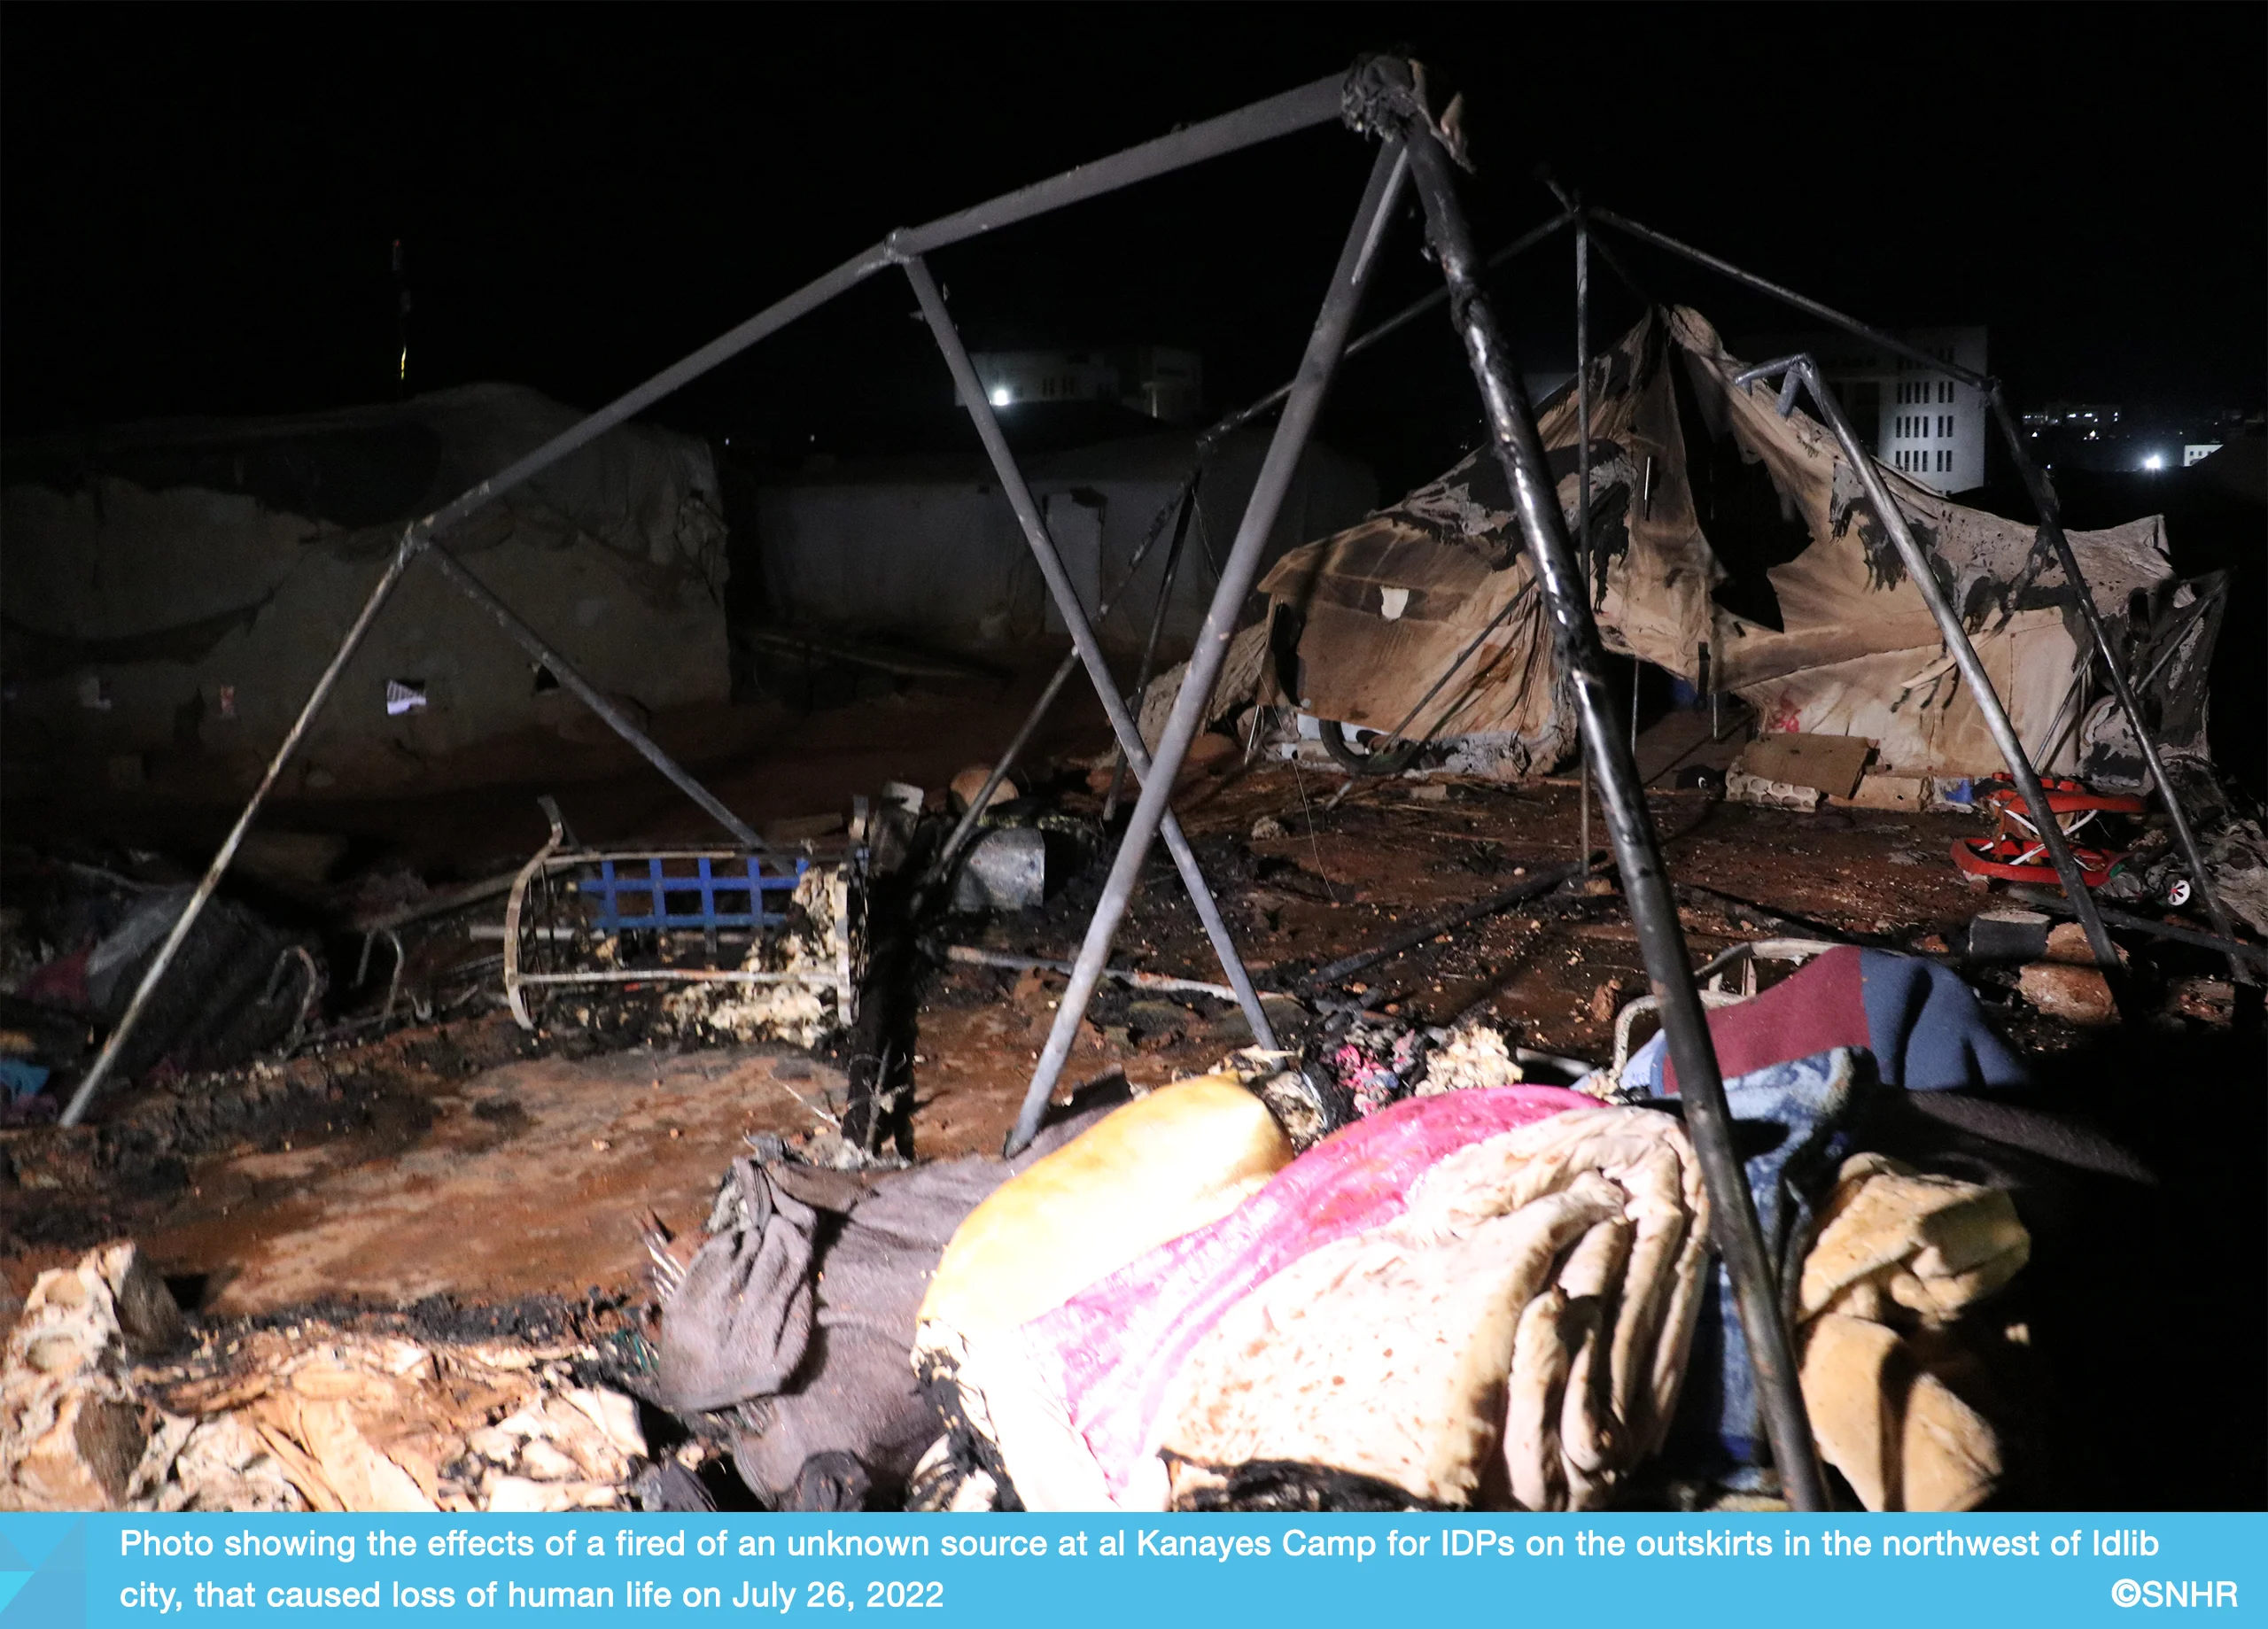 صور خاصة بالشبكة السورية لحقوق الإنسان تُظهر الأضرار  في مخيم الكنايس للنازحين في إدلب 26-7-2022 (1)